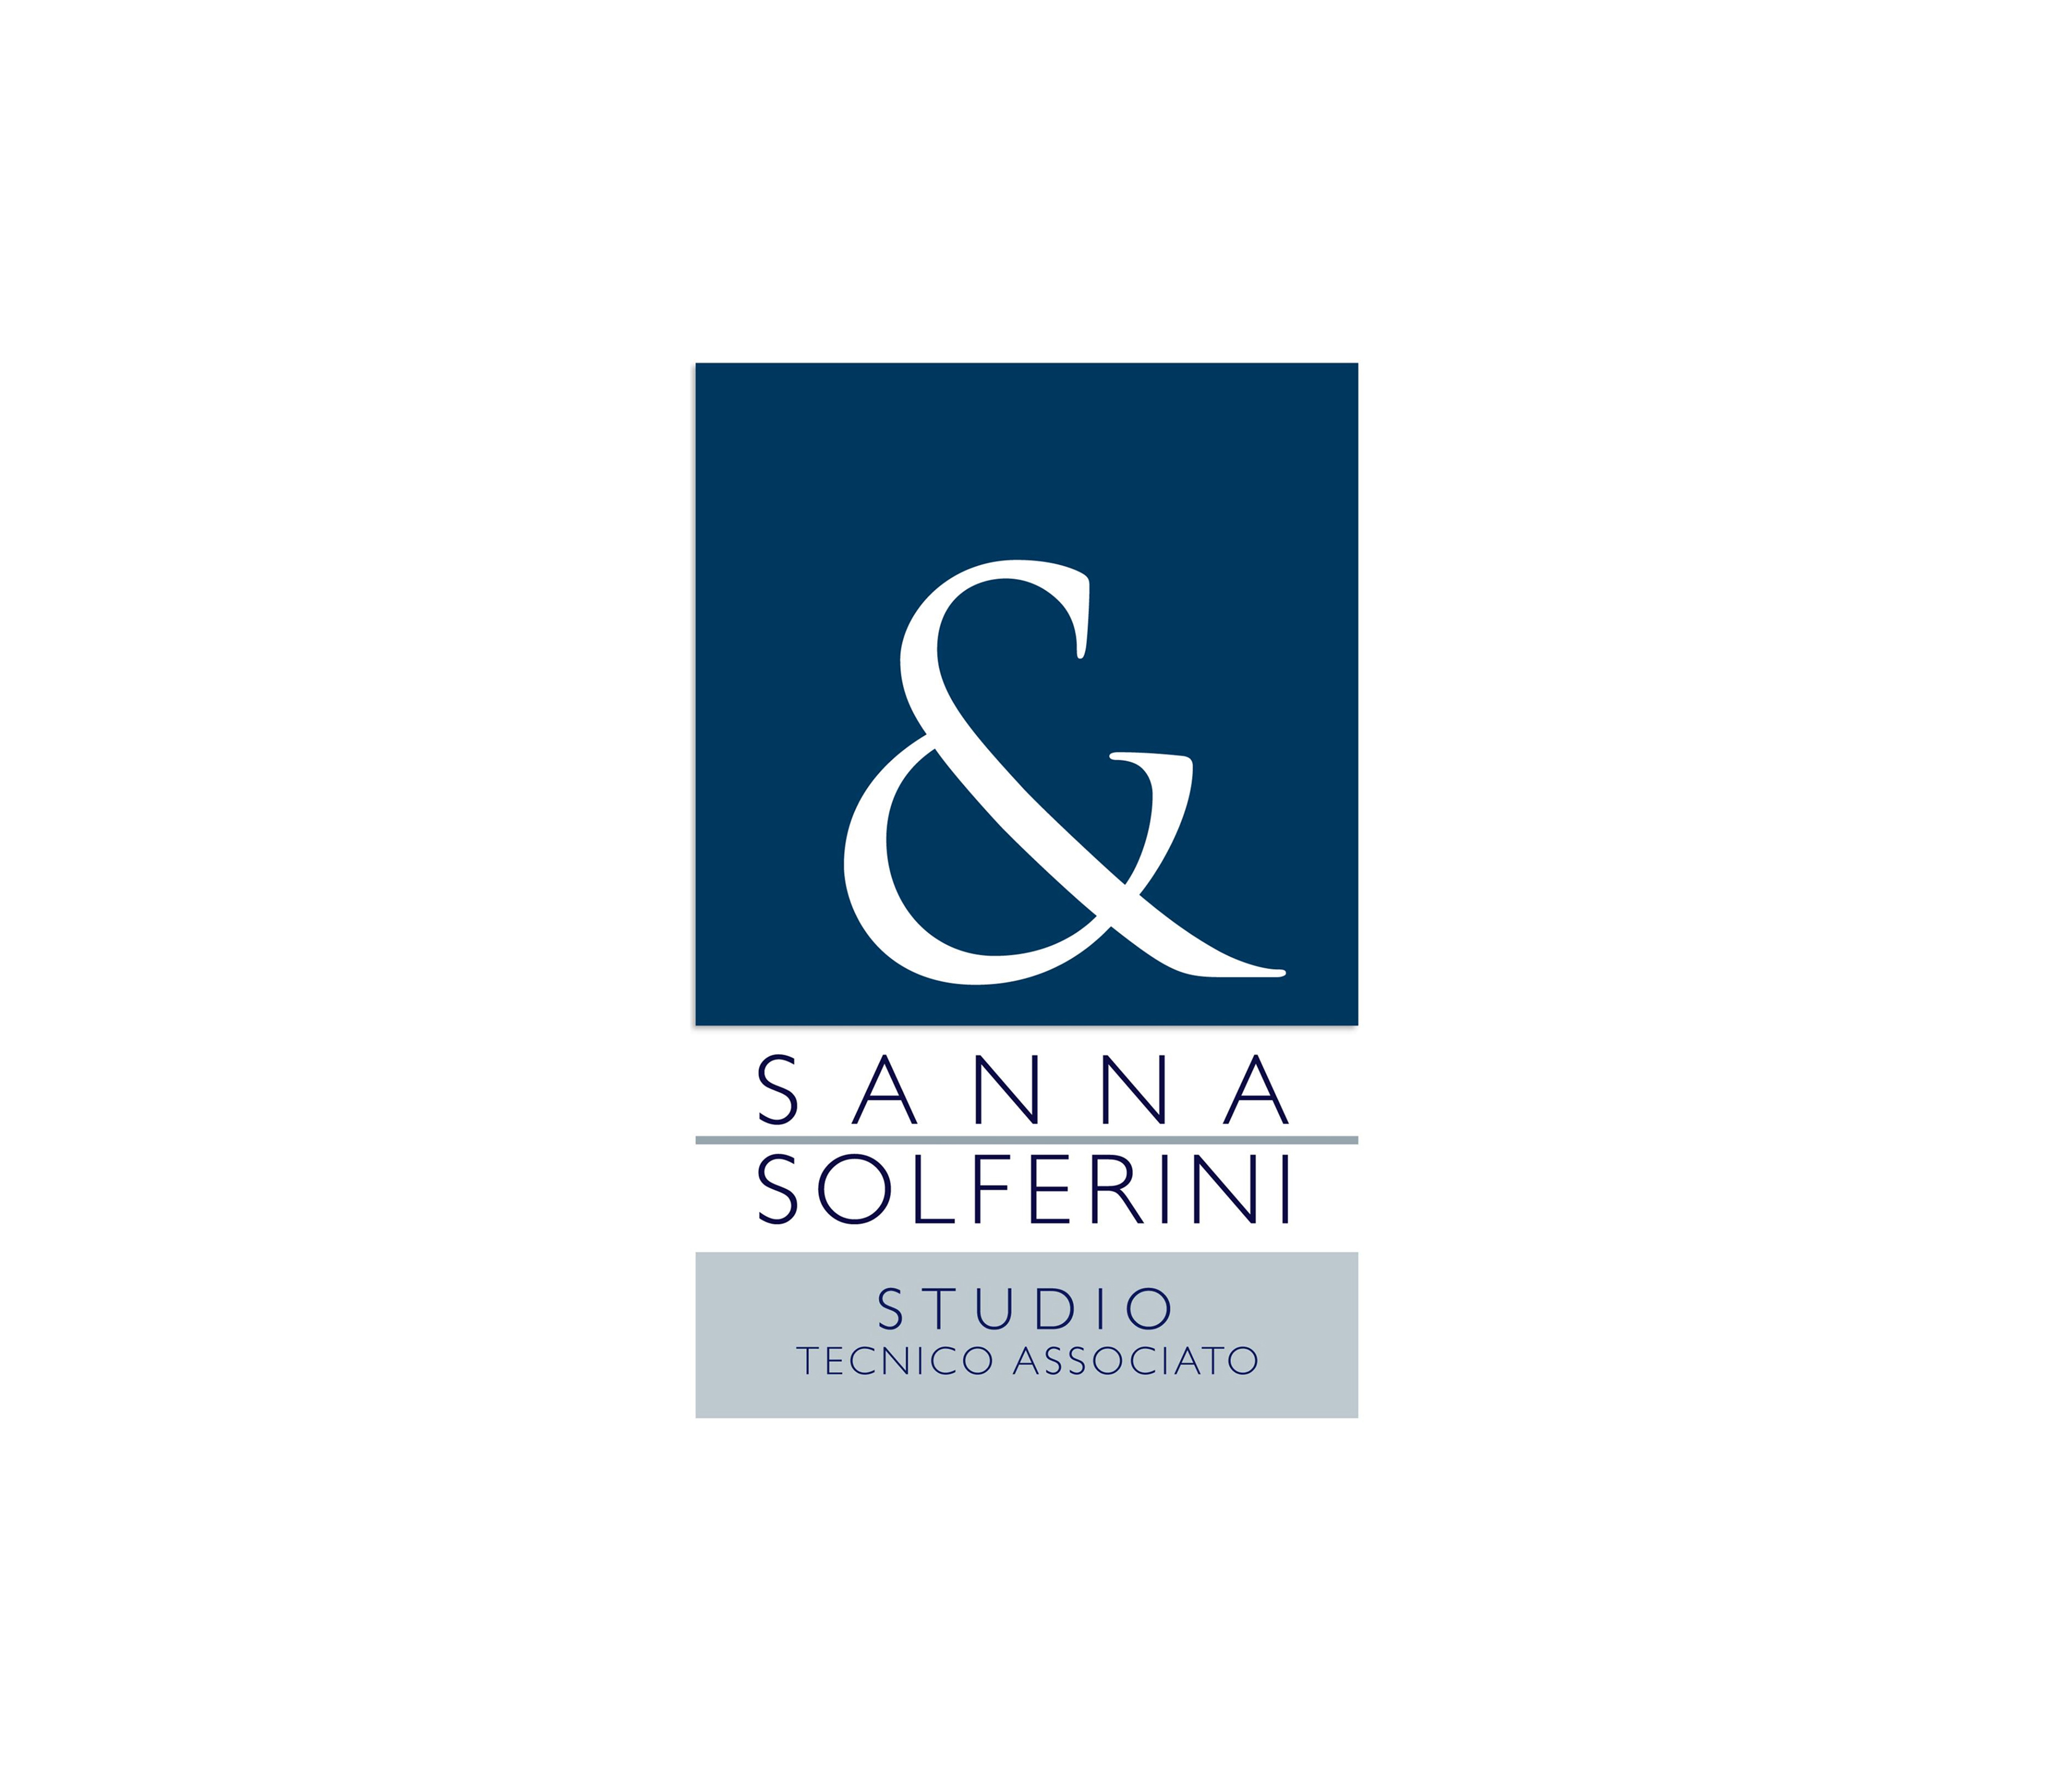 Studio tecnico Sanna Solferini - Studio tecnico